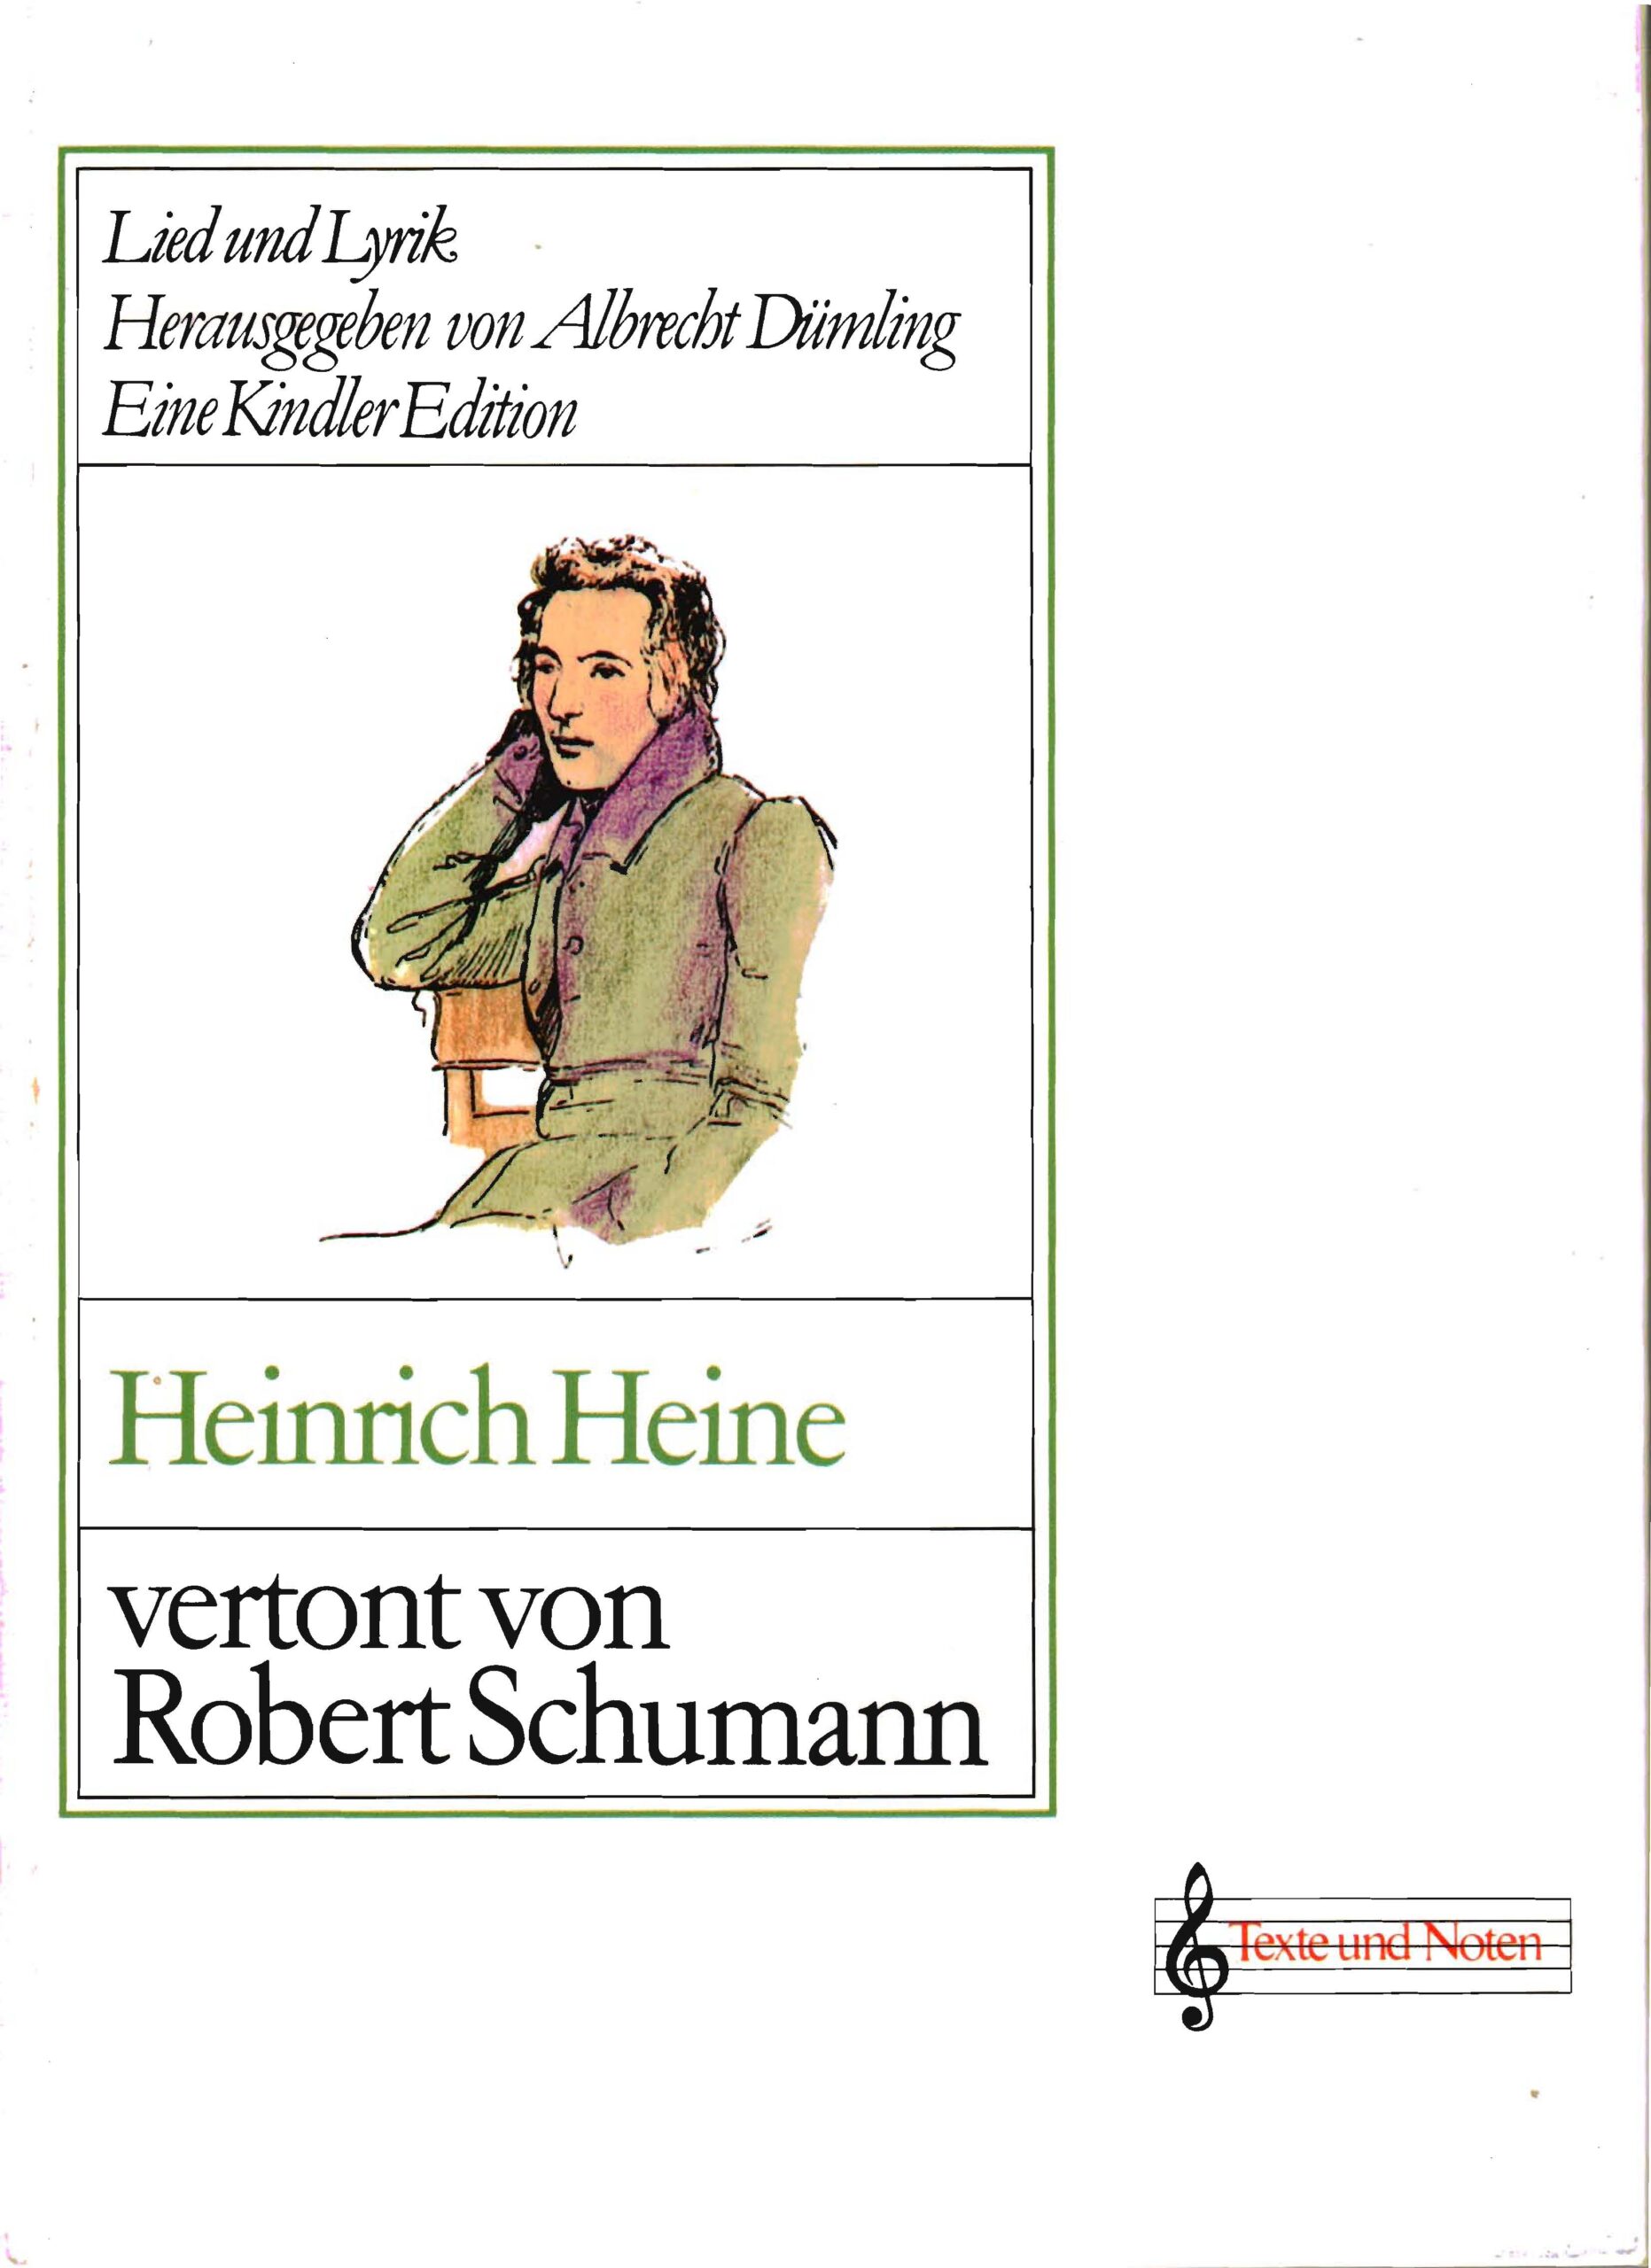 Heinrich Heine vertont von Robert Schumann.